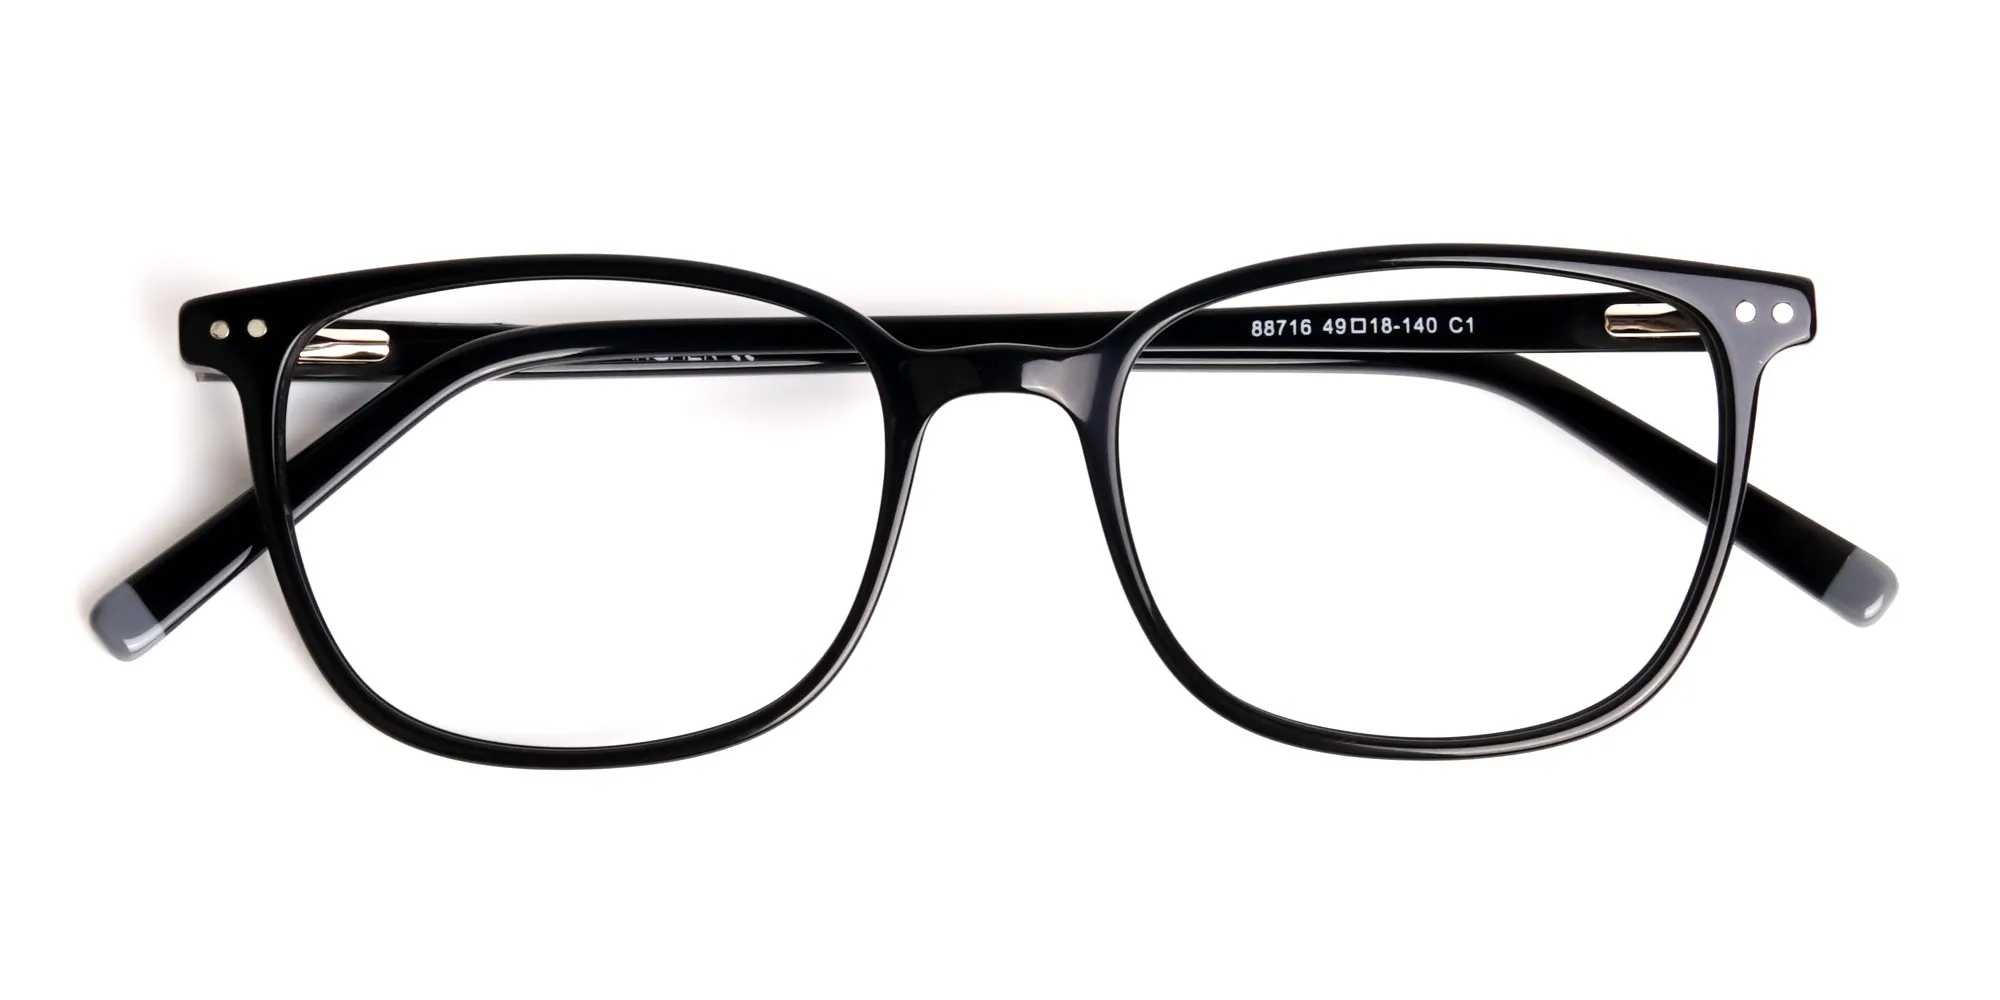 Glossy-Black-Rectangular-Glasses-Frames-2